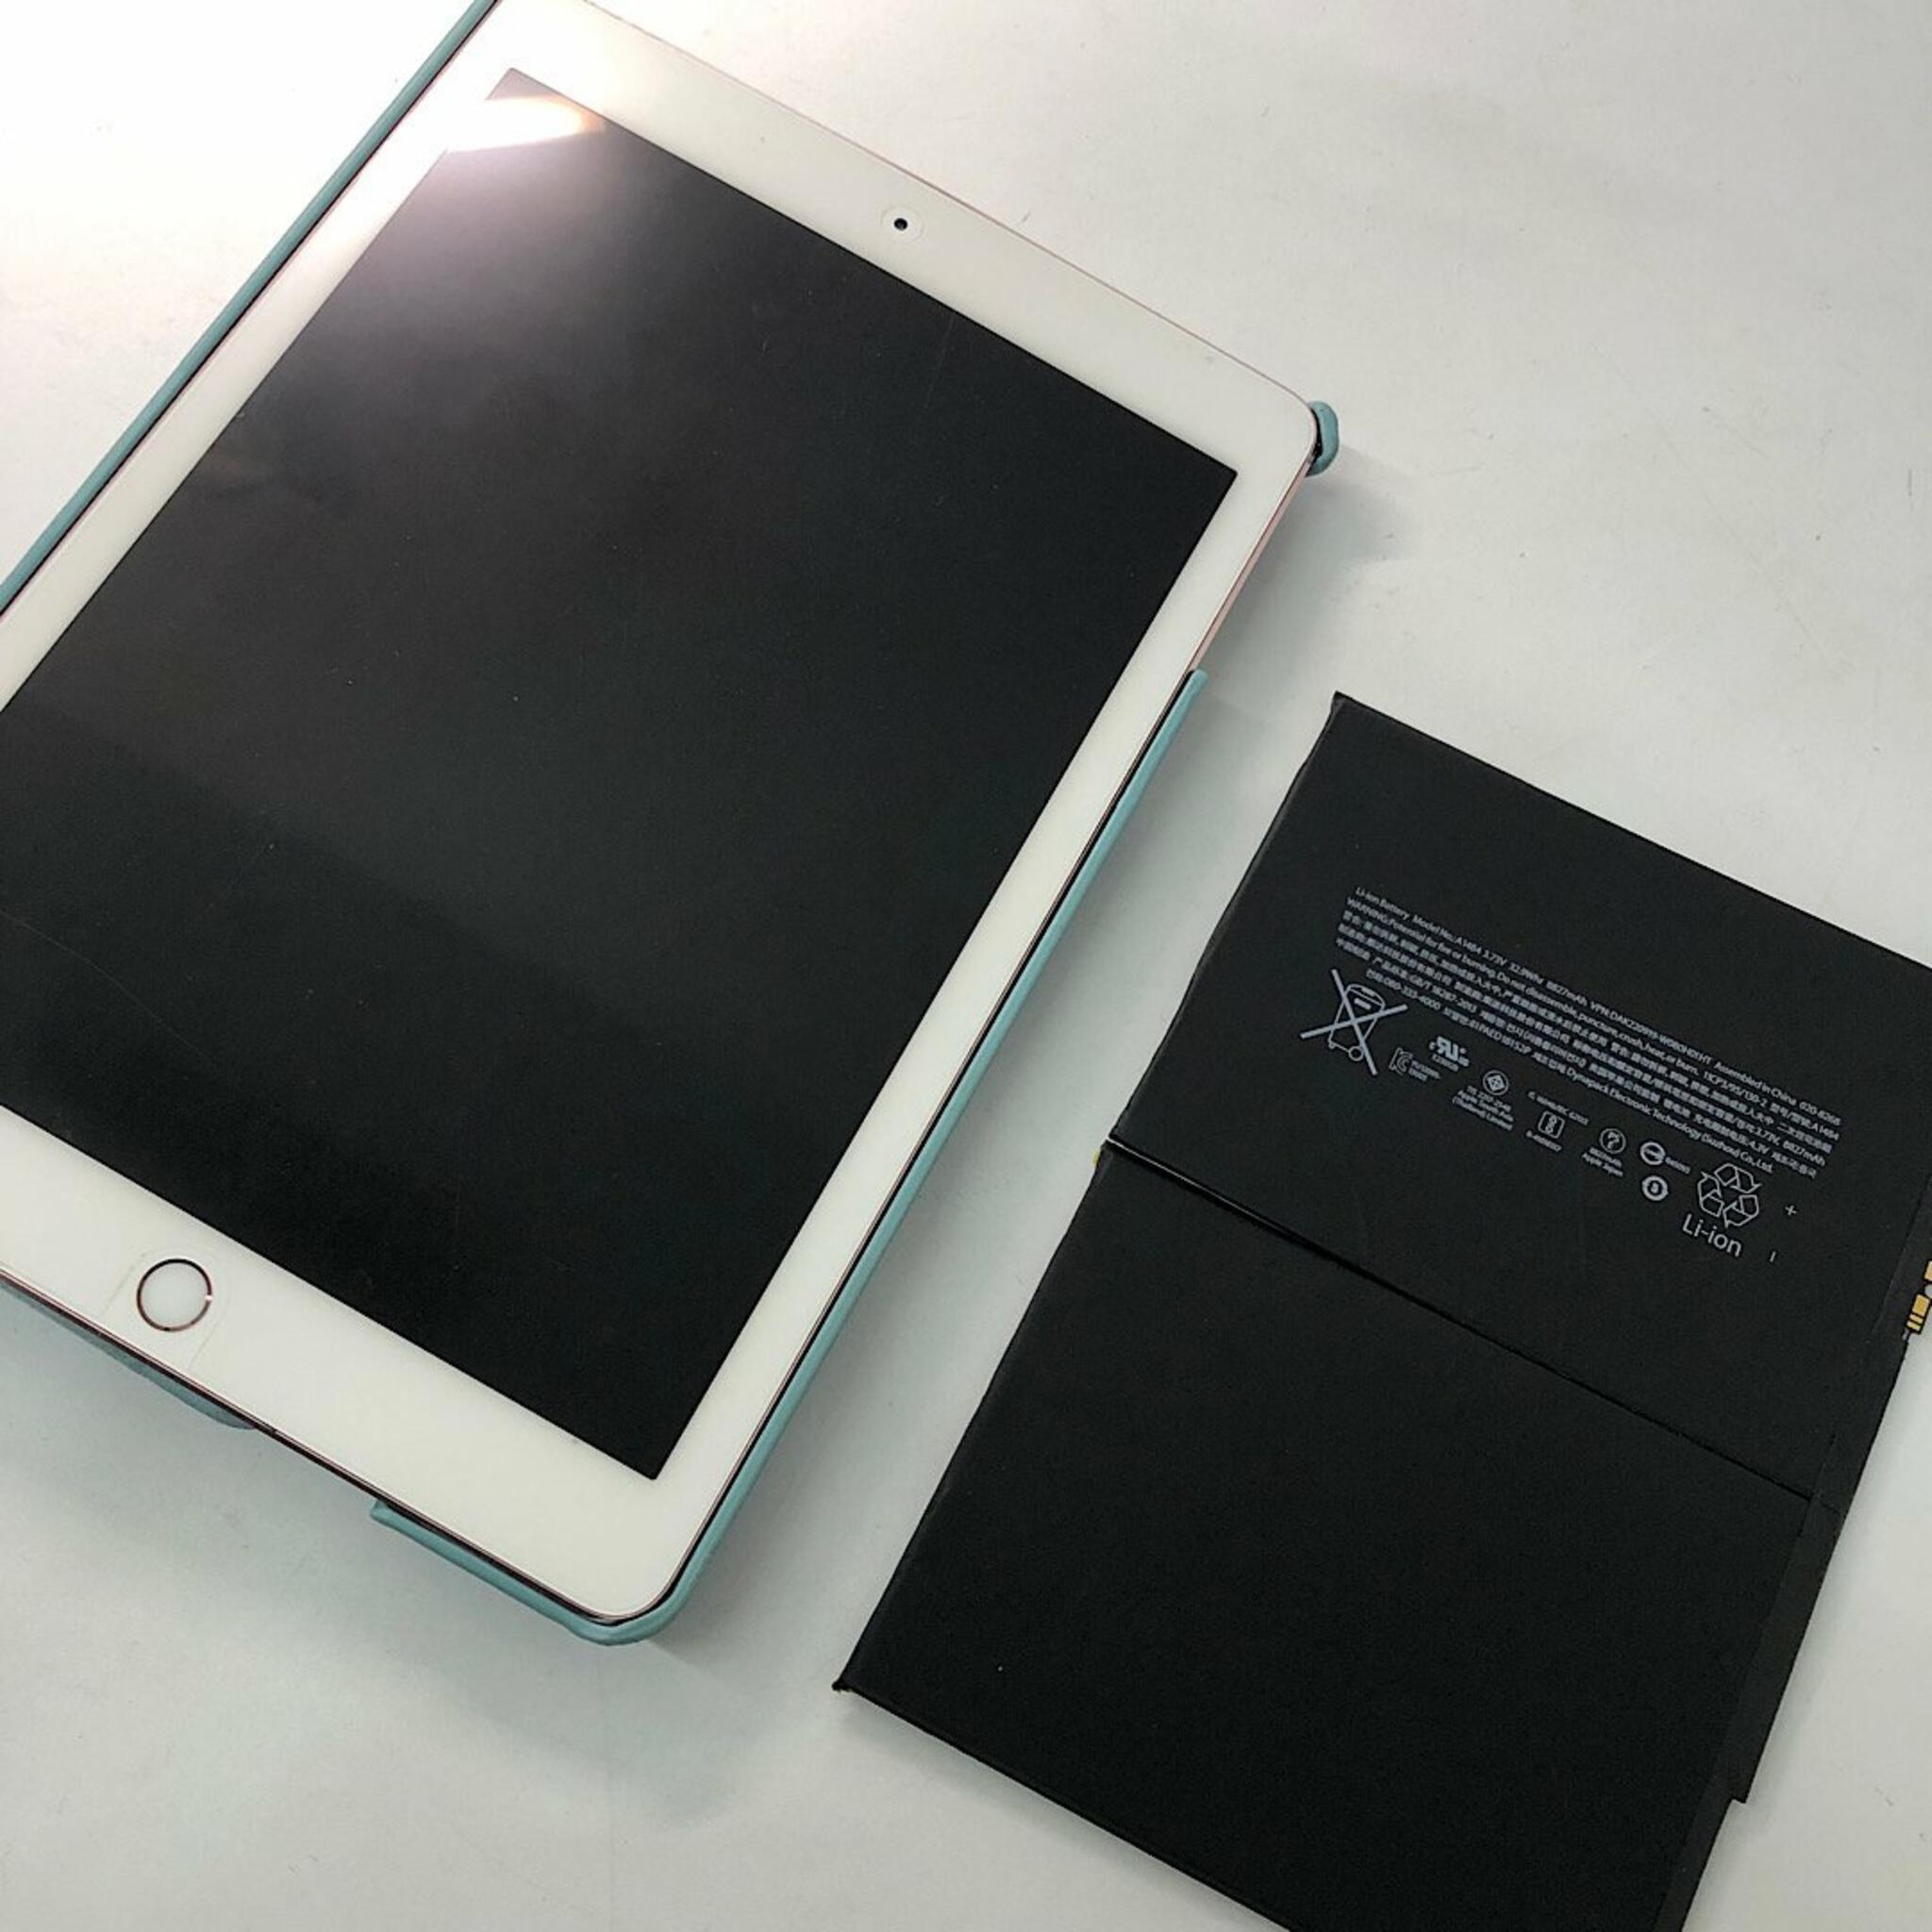 iPhone修理SHOP ままともプラザ町田店からのお知らせ(iPad5 バッテリー交換)に関する写真